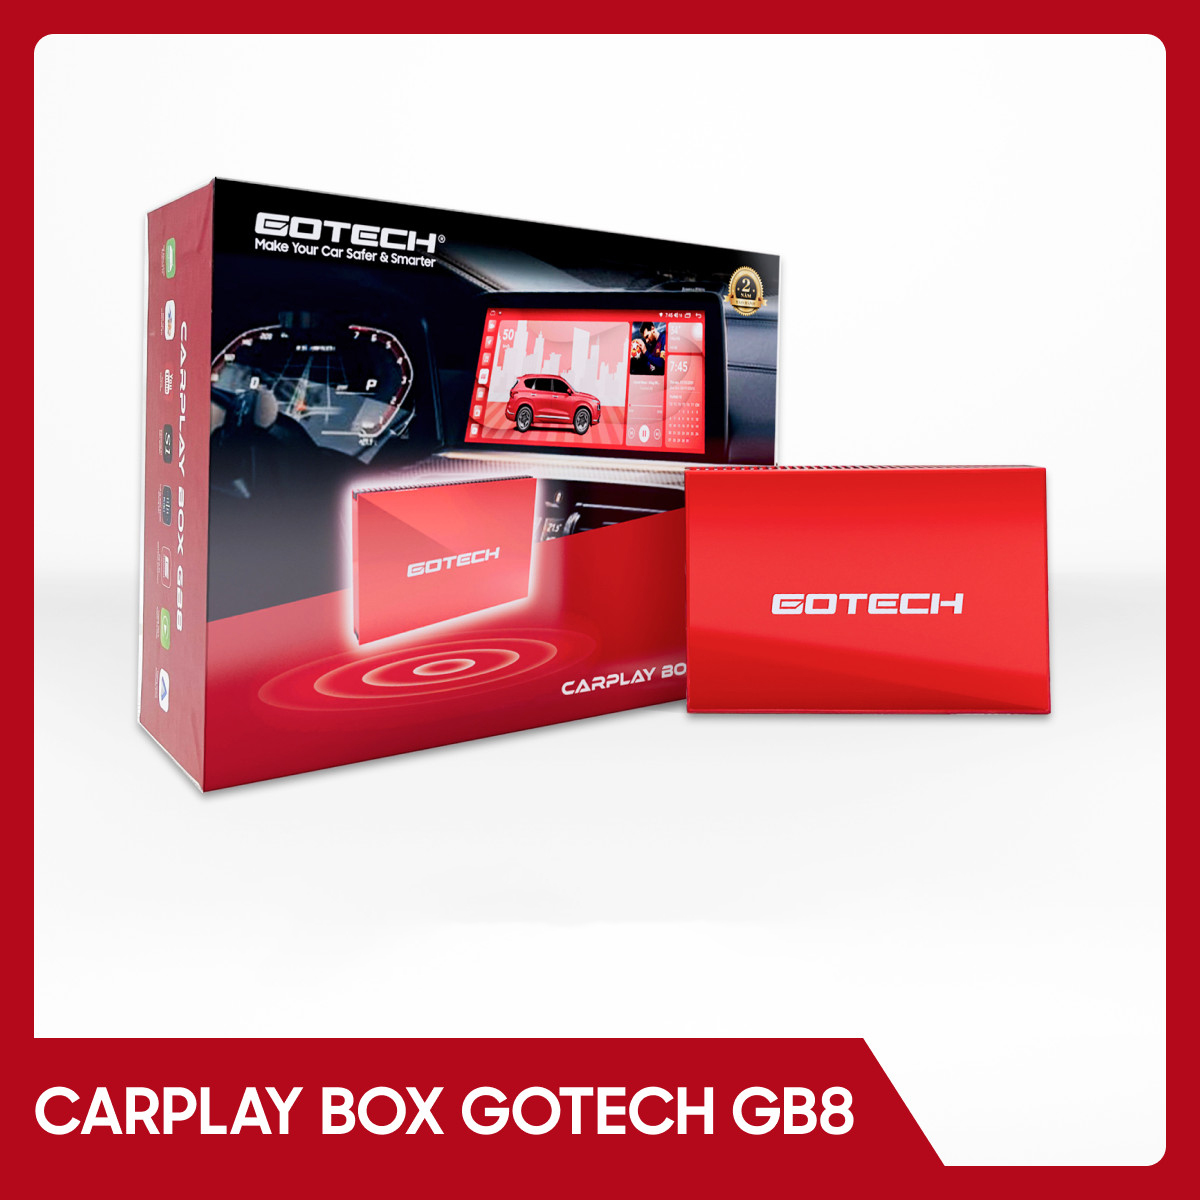 Carplay Box GB8 - Android Box Ô Tô Gotech